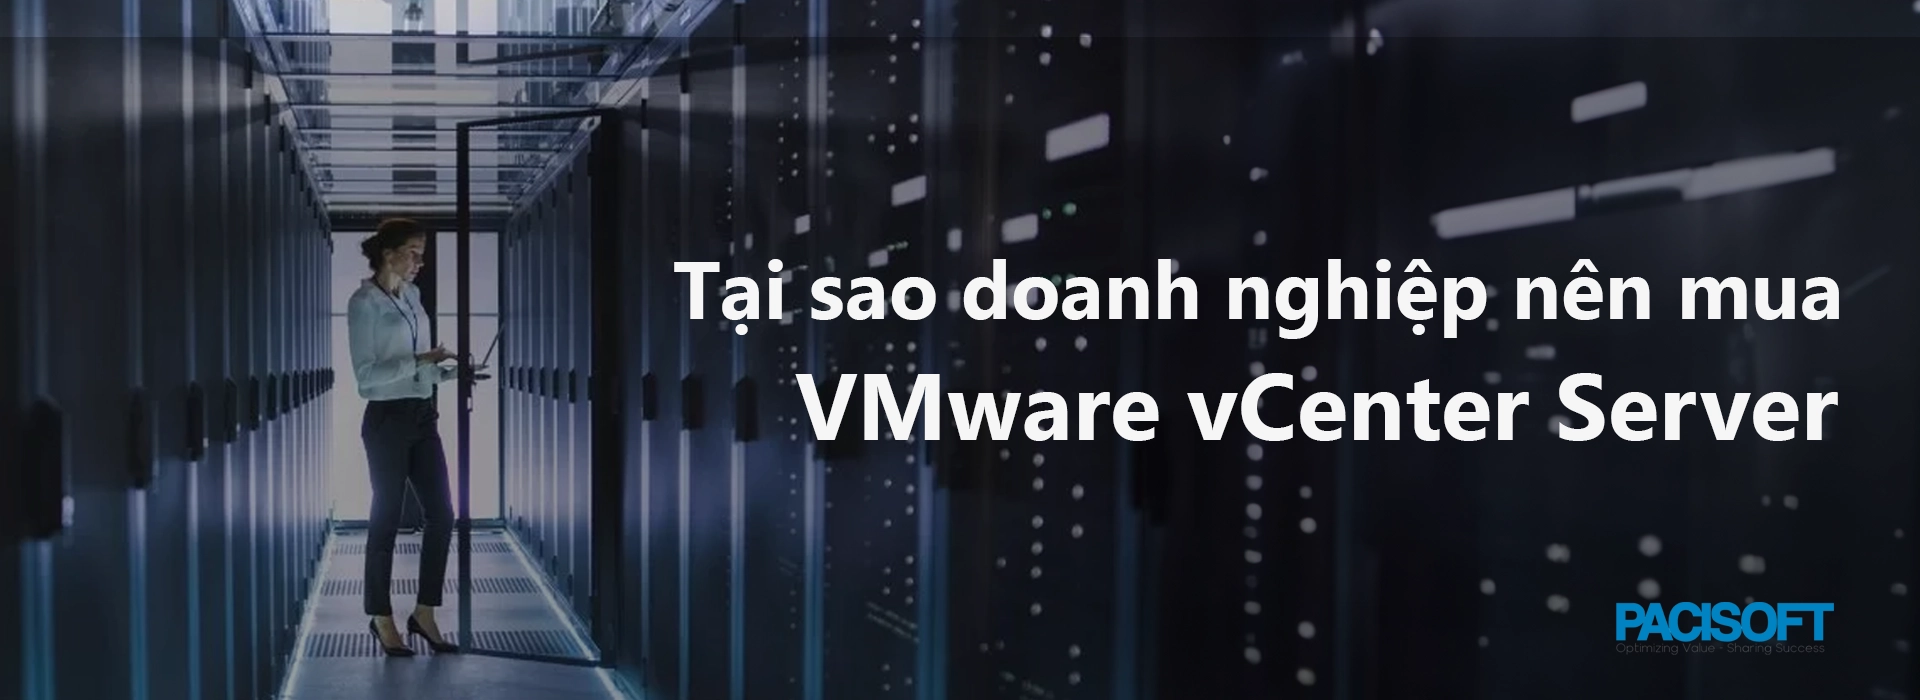 Tại sao nên mua VMware vCenter Server cho môi trường doanh nghiệp?